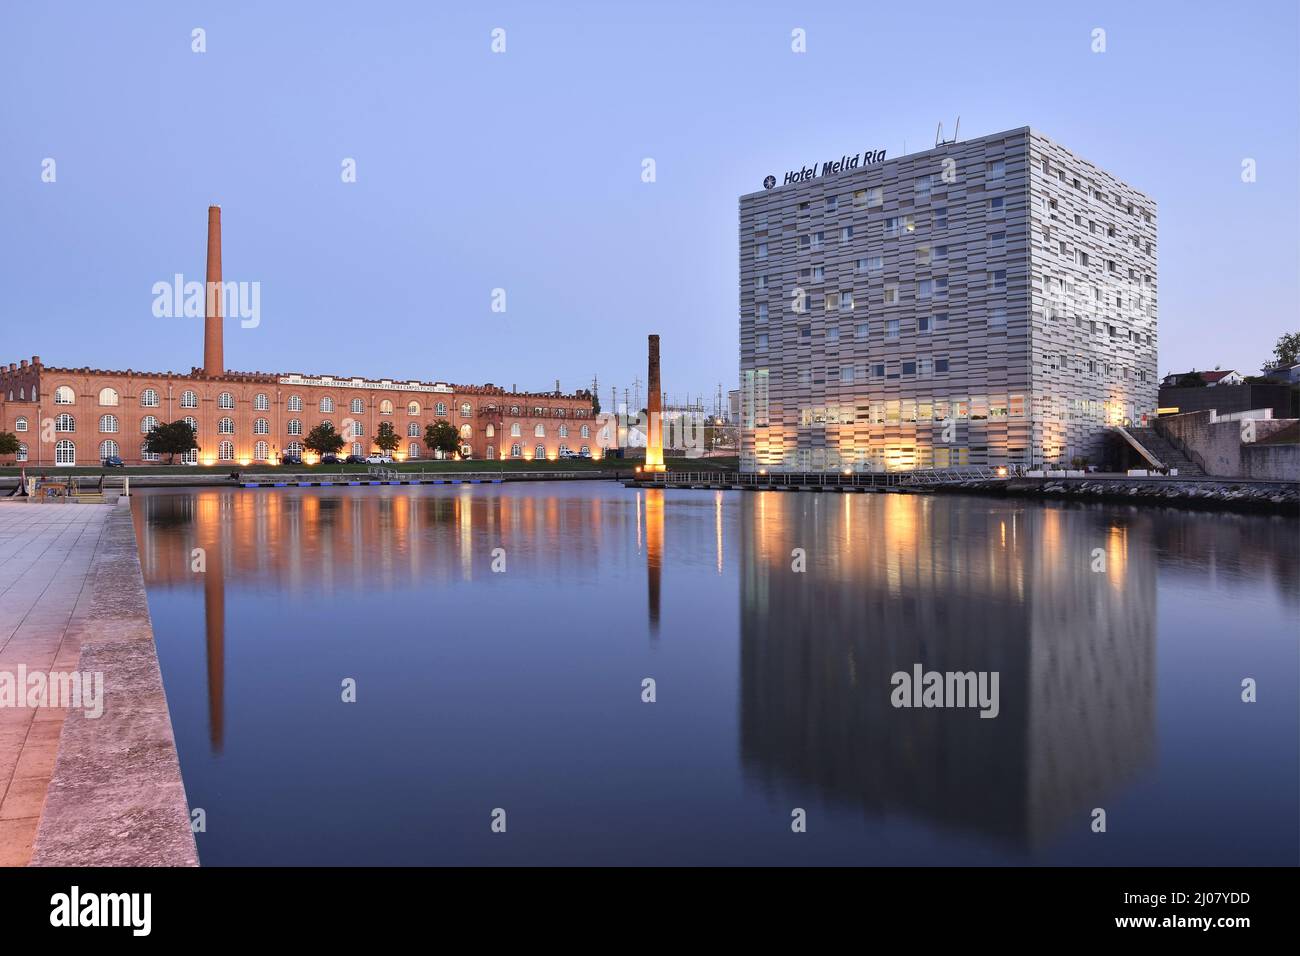 Das moderne Hotel Melia Ria und das Kongresszentrum (ehemaliges Fabrikgebäude) spiegeln sich in der Abenddämmerung im Canal do Cojo, Aveiro Portugal, wider. Stockfoto